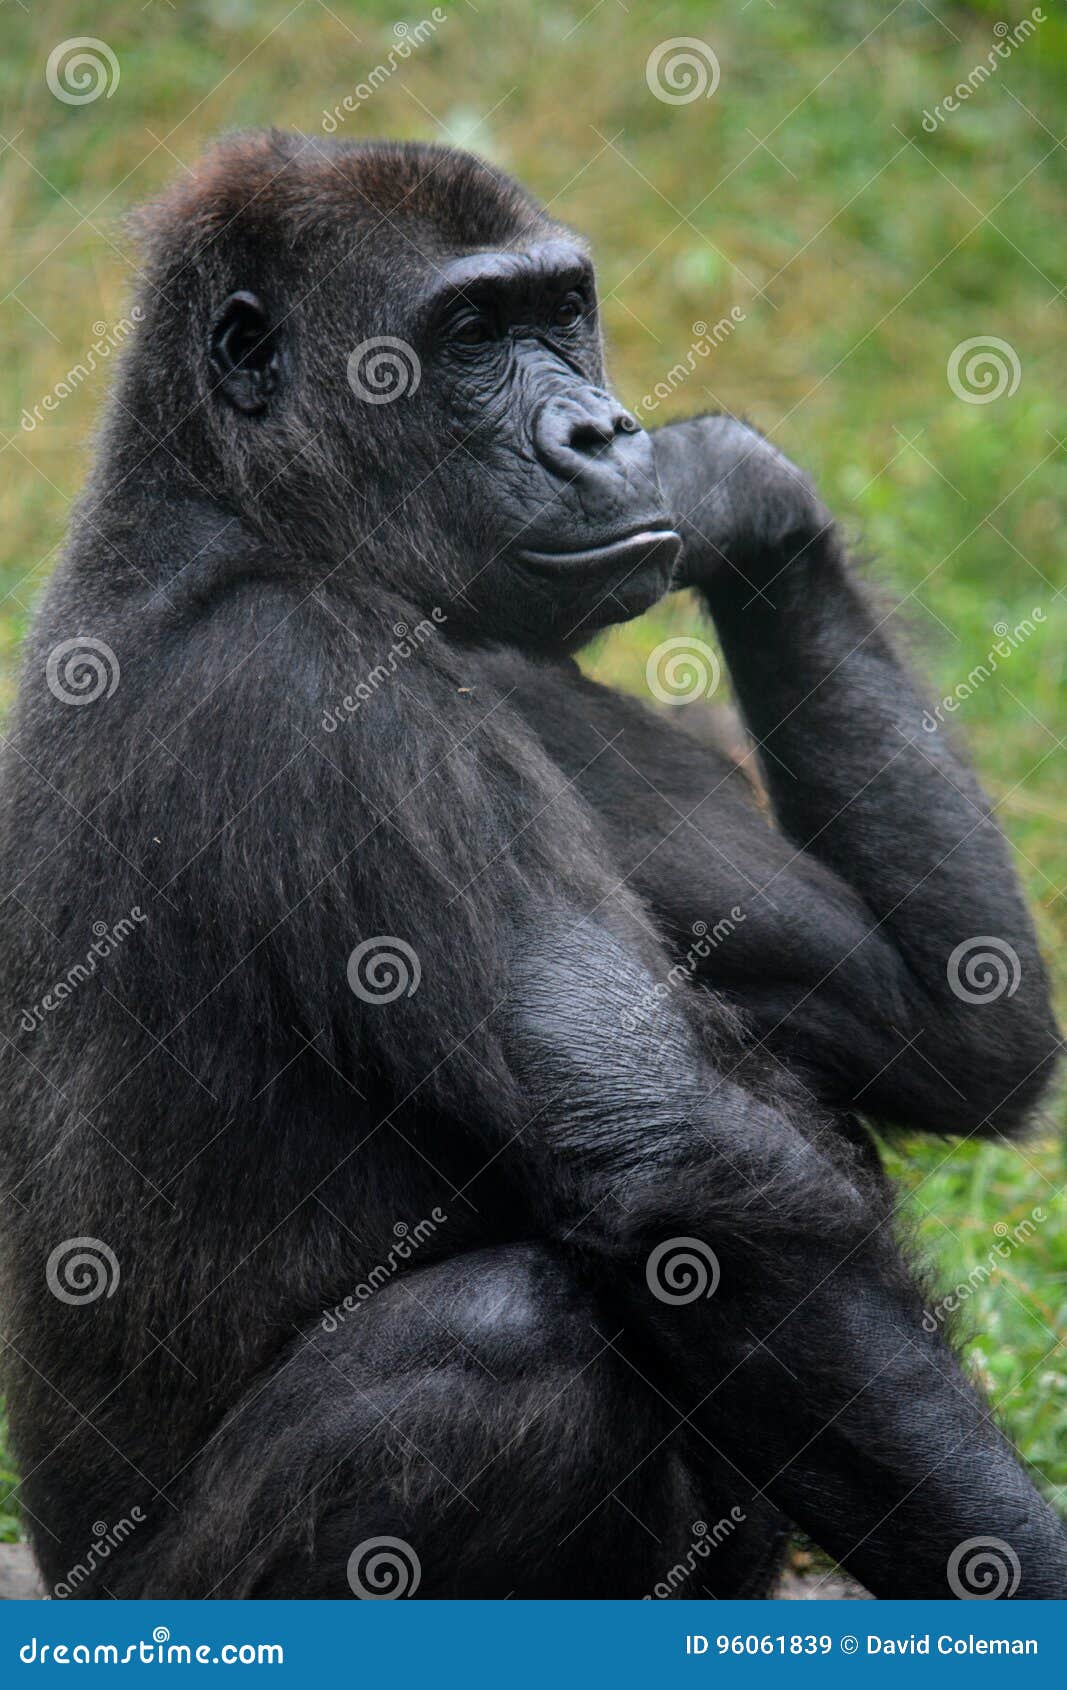 Illustration of a gorilla in a muscular pose - Stock Illustration  [63024173] - PIXTA